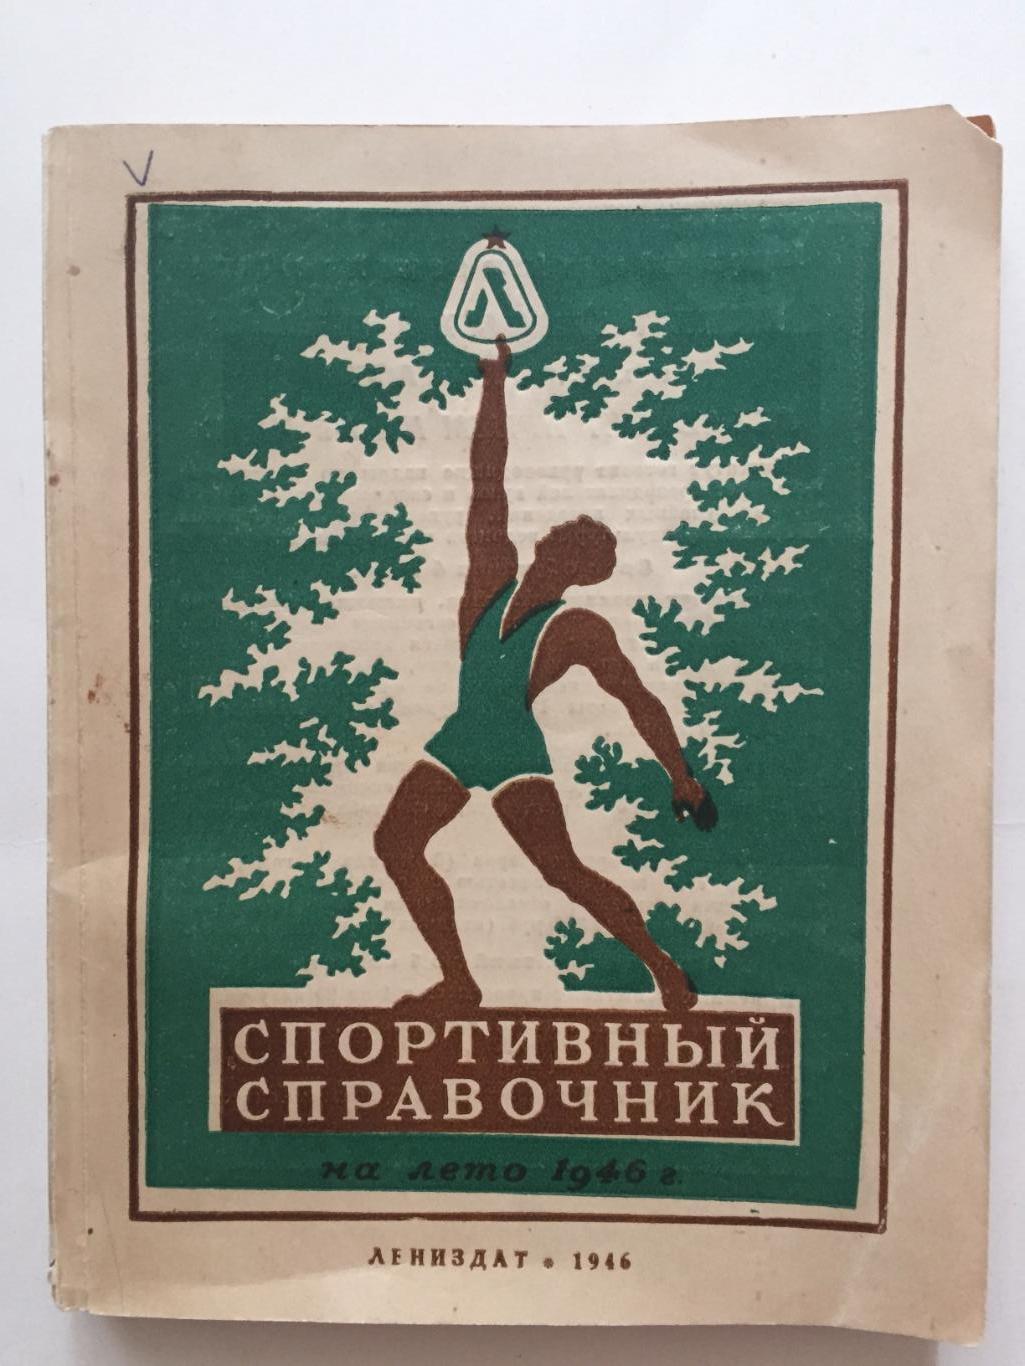 Пендер-Бугровский Спортивный справочник 1946